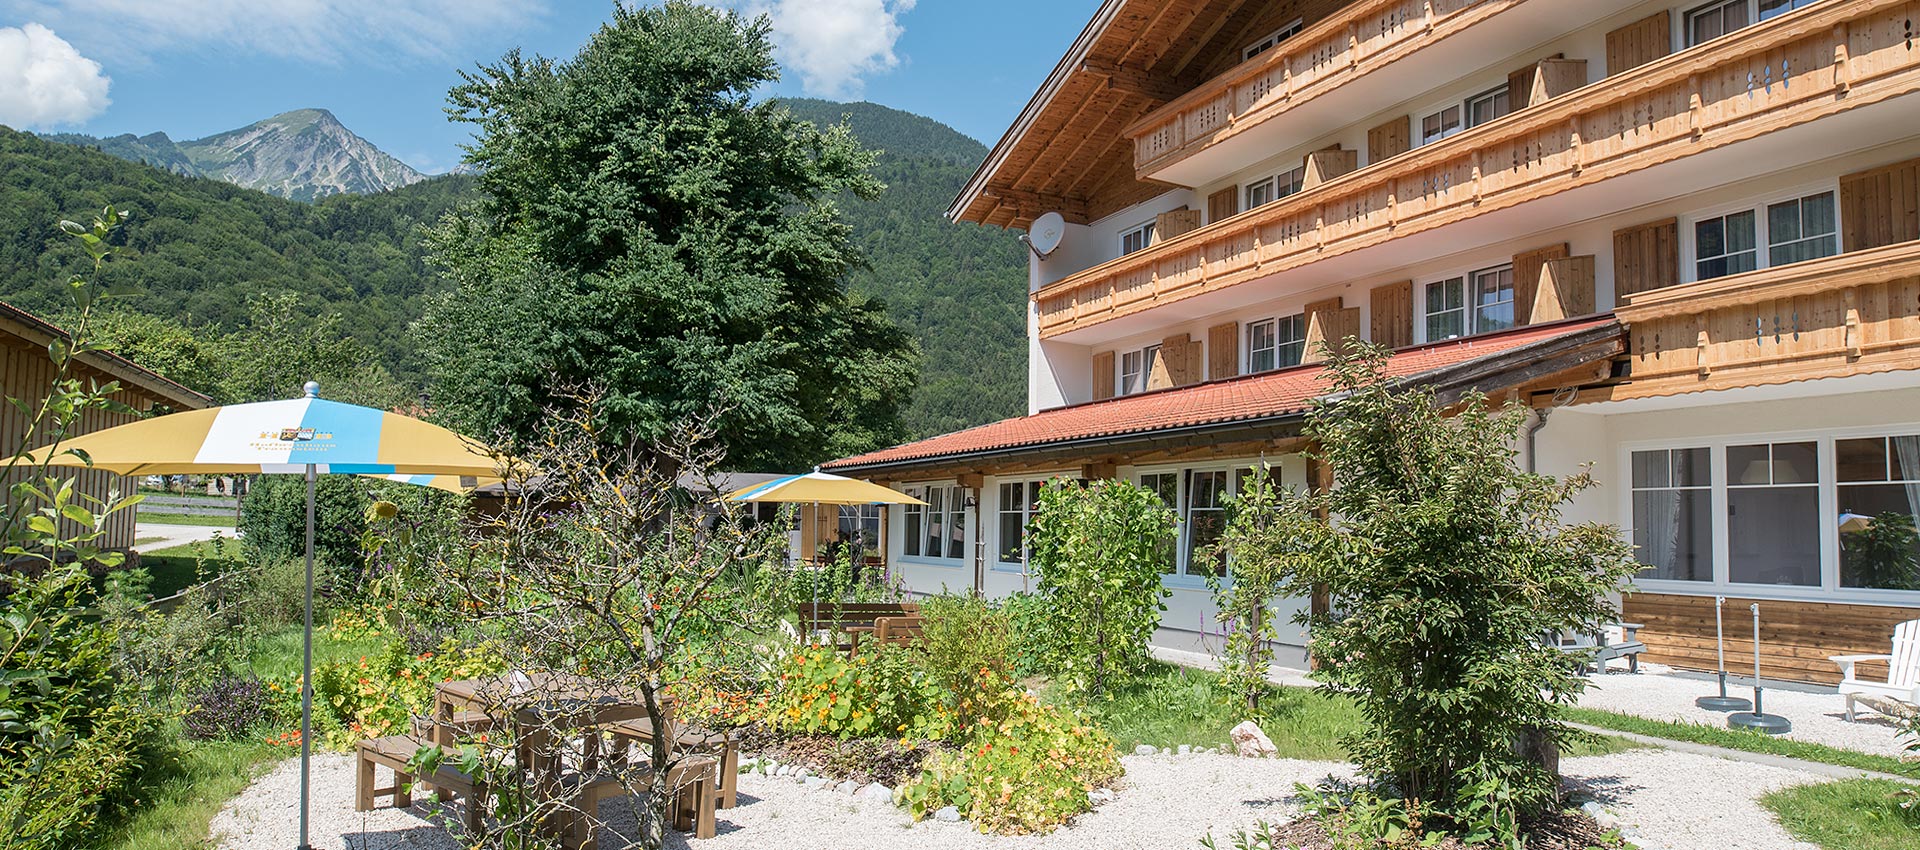 Alpenhotel Dahoam - Gastgarten